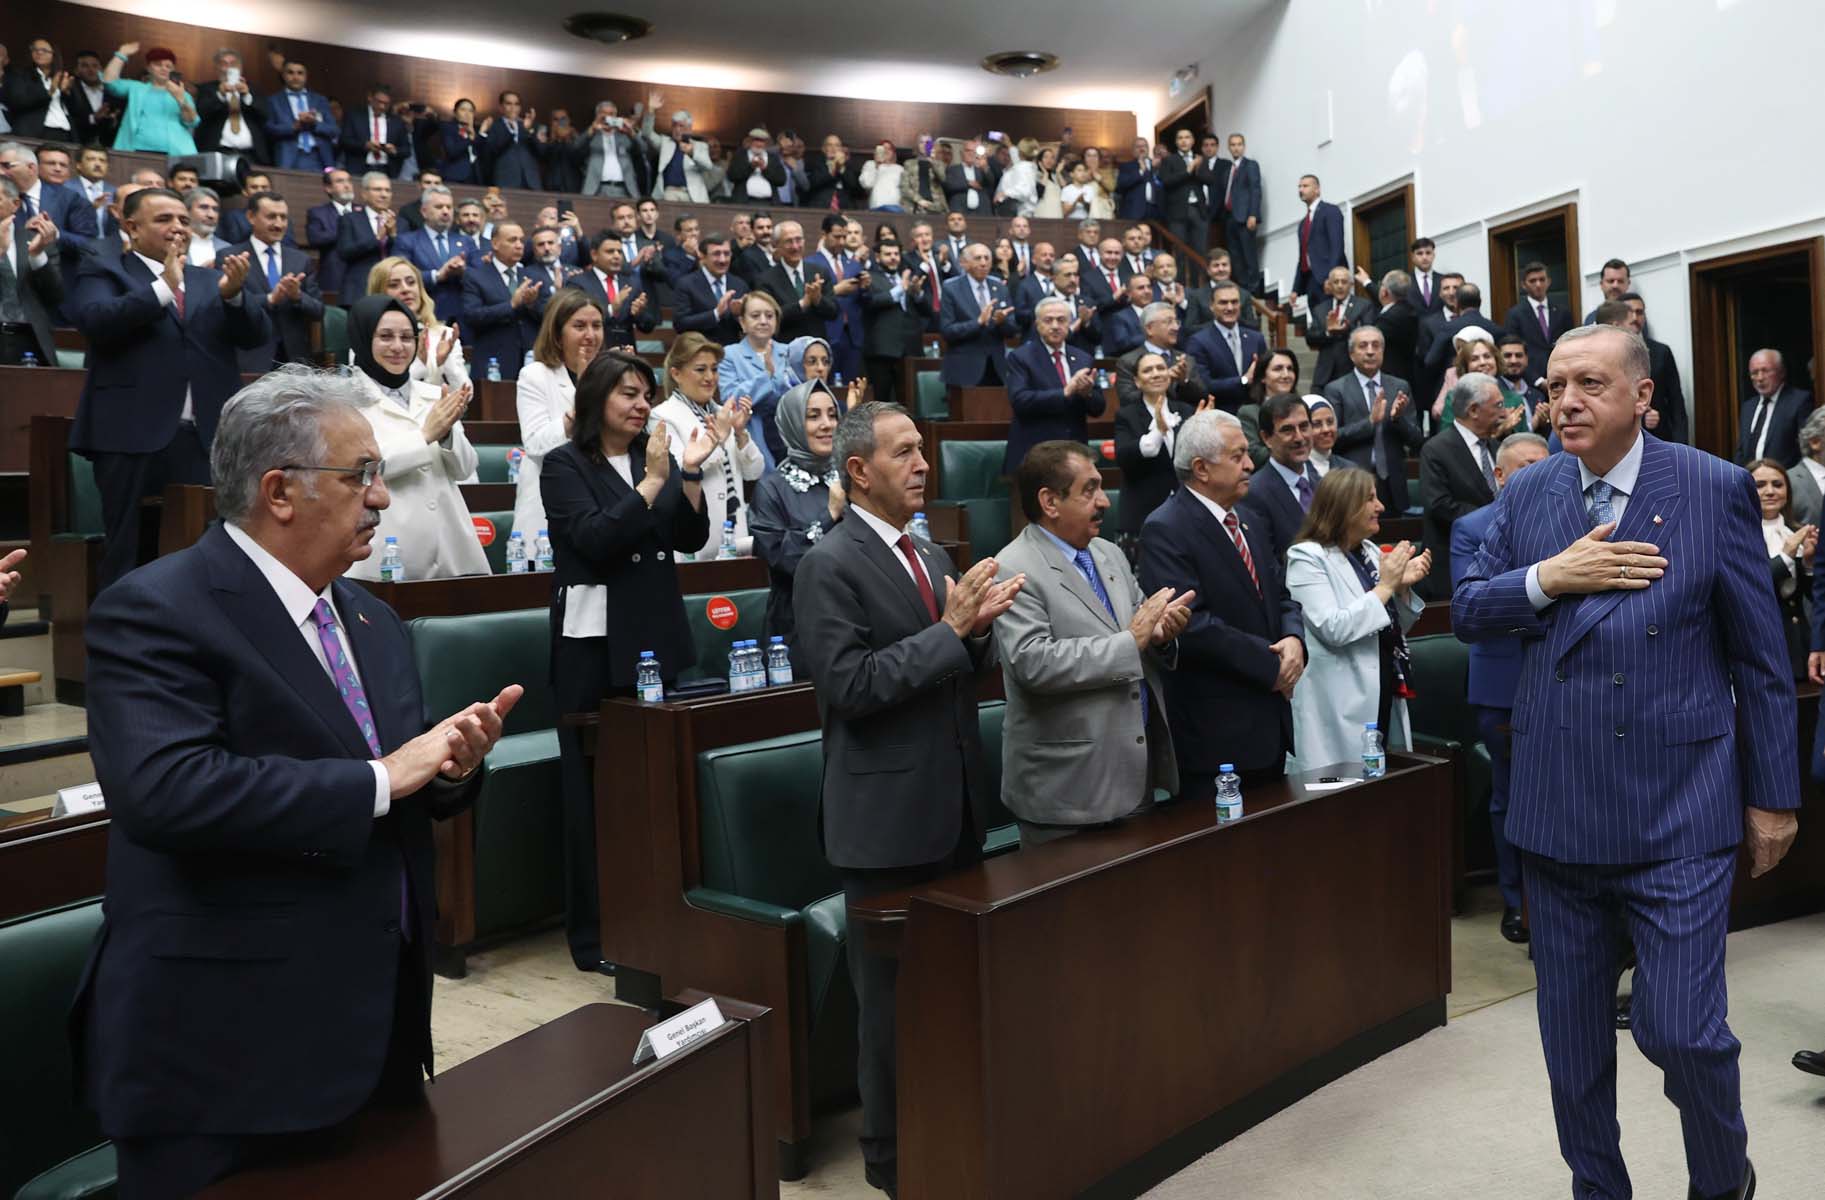 Cumhurbaşkanı Erdoğan AK Parti Grup toplantısında konuştu, Kılıçdaroğlu'na ses yükseltti: Çık ortaya mert ol, adaylığını veya adayını açıkla